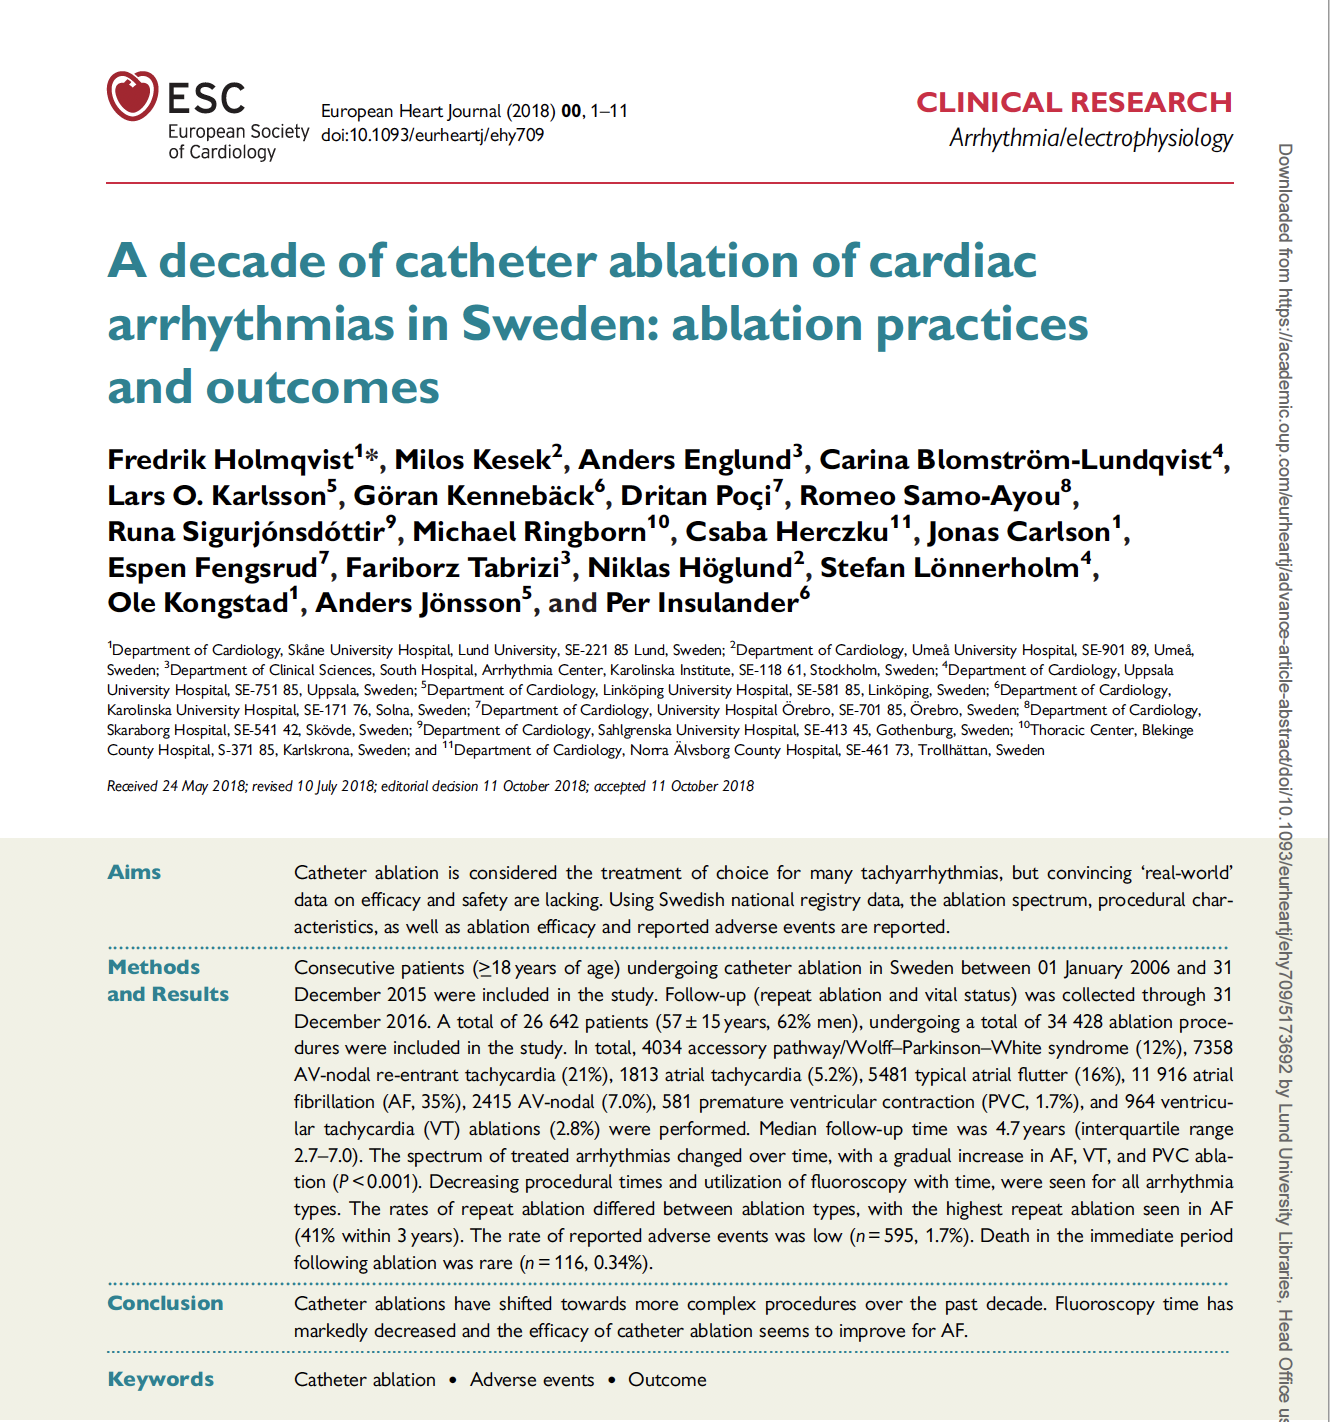 Samlad erfarenhet av 10-års ablation i Sverige i European Heart Journal